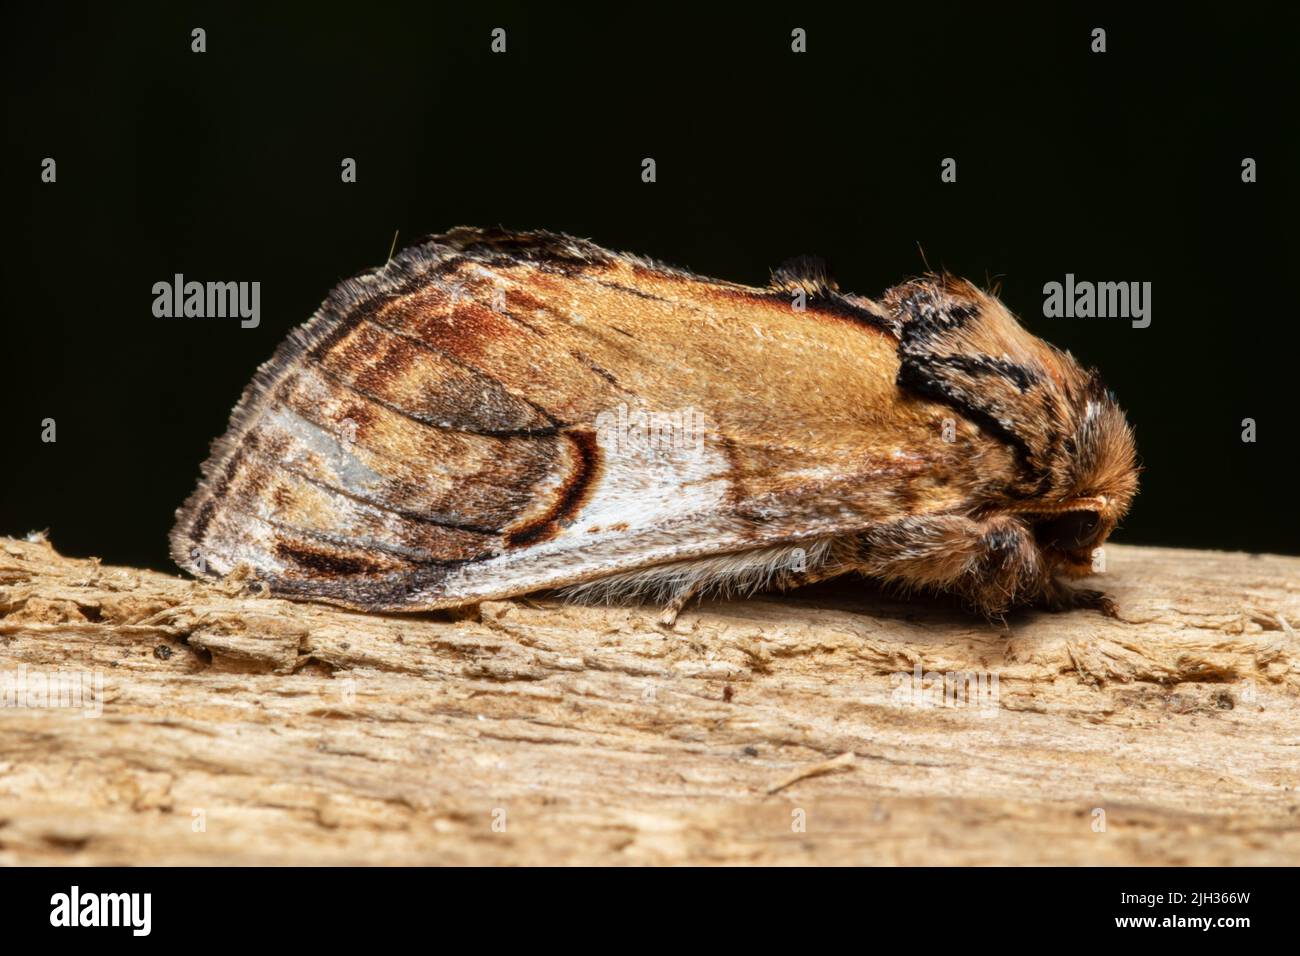 Notodonta ziczac, der Kiesel prominente Motte, ruhend auf einem faulen Baumstamm. Stockfoto